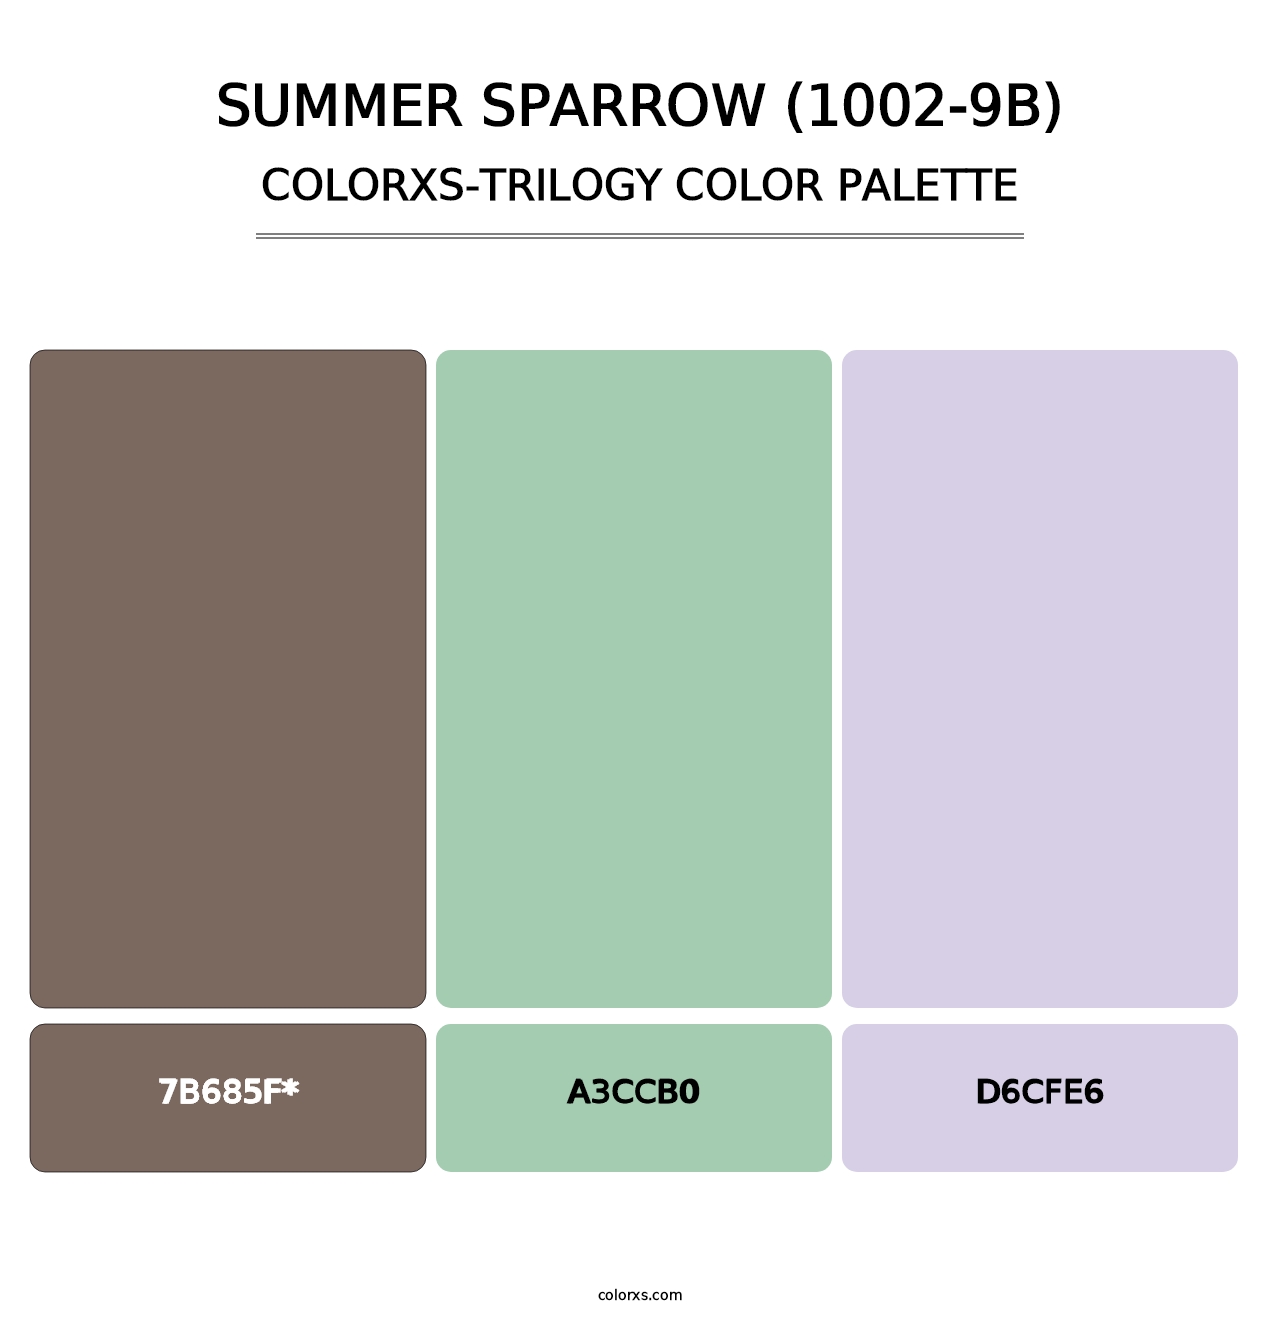 Summer Sparrow (1002-9B) - Colorxs Trilogy Palette